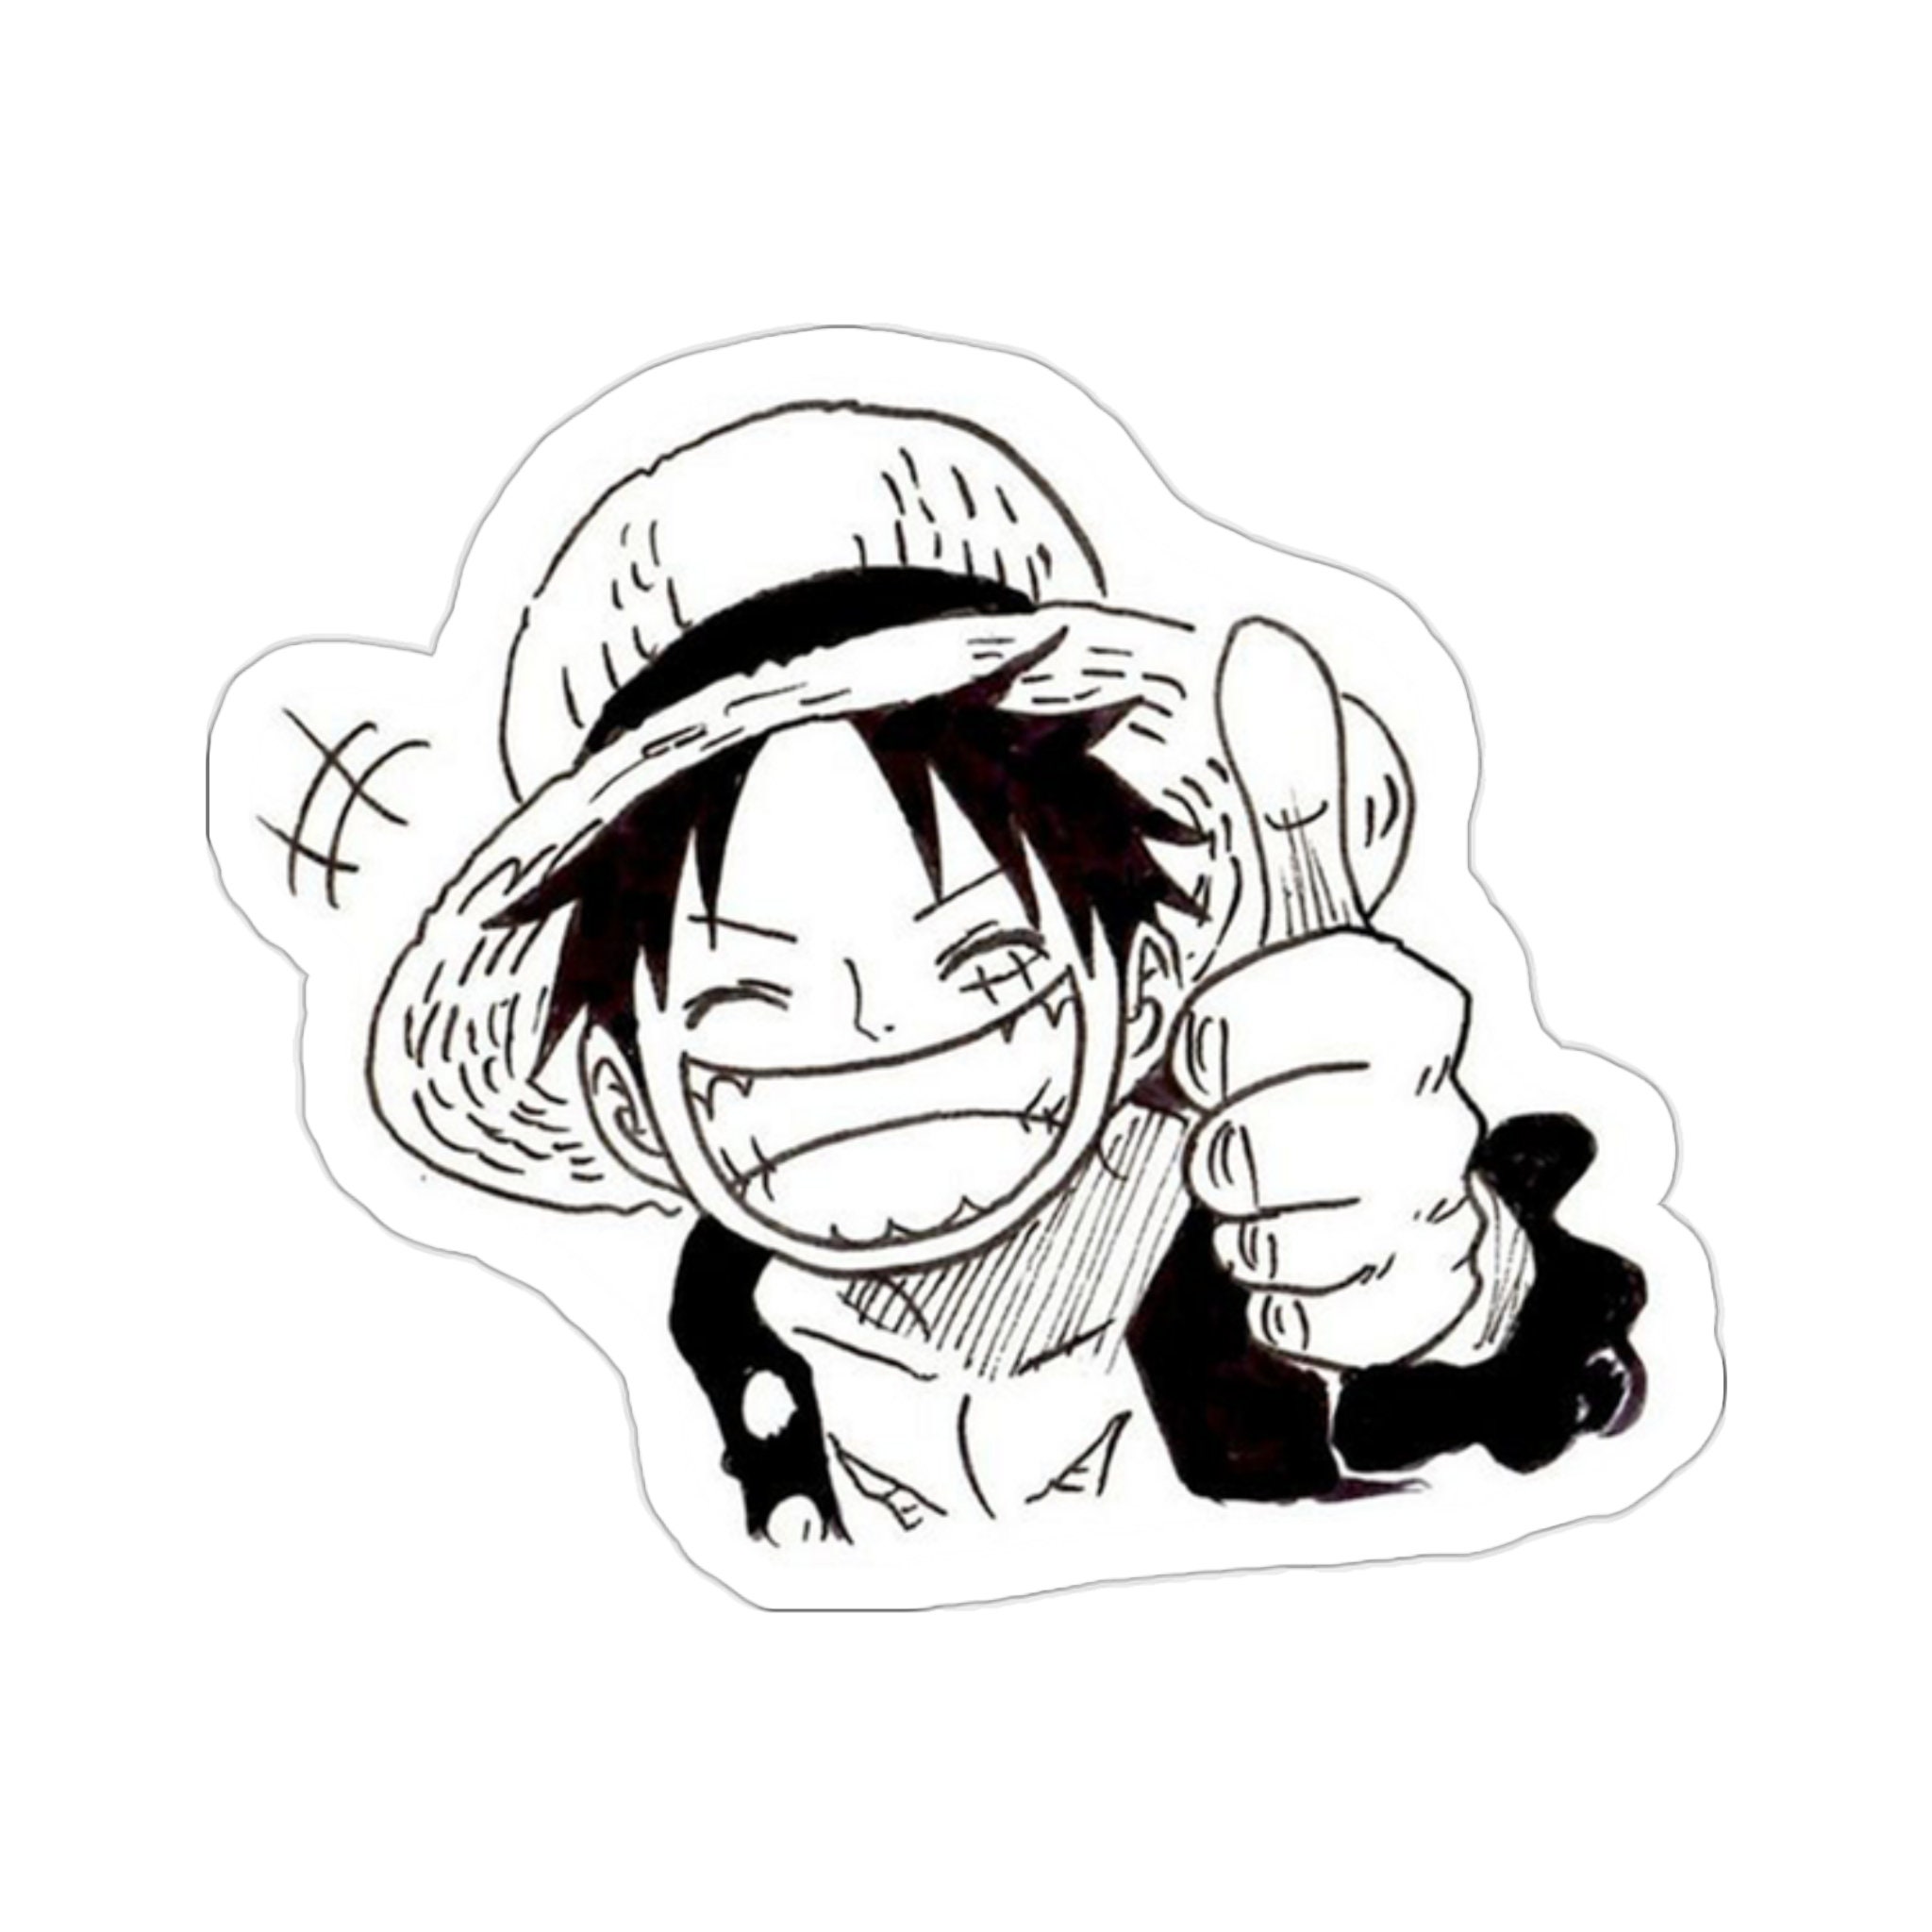 One Piece Parody Black Boys Kids Tank Top - Eiichiro Yoda drawing Luffy  upside down. (Funny One Piece Parody - High Quality Tank Top - Size 1058 -  Ref : 1058)